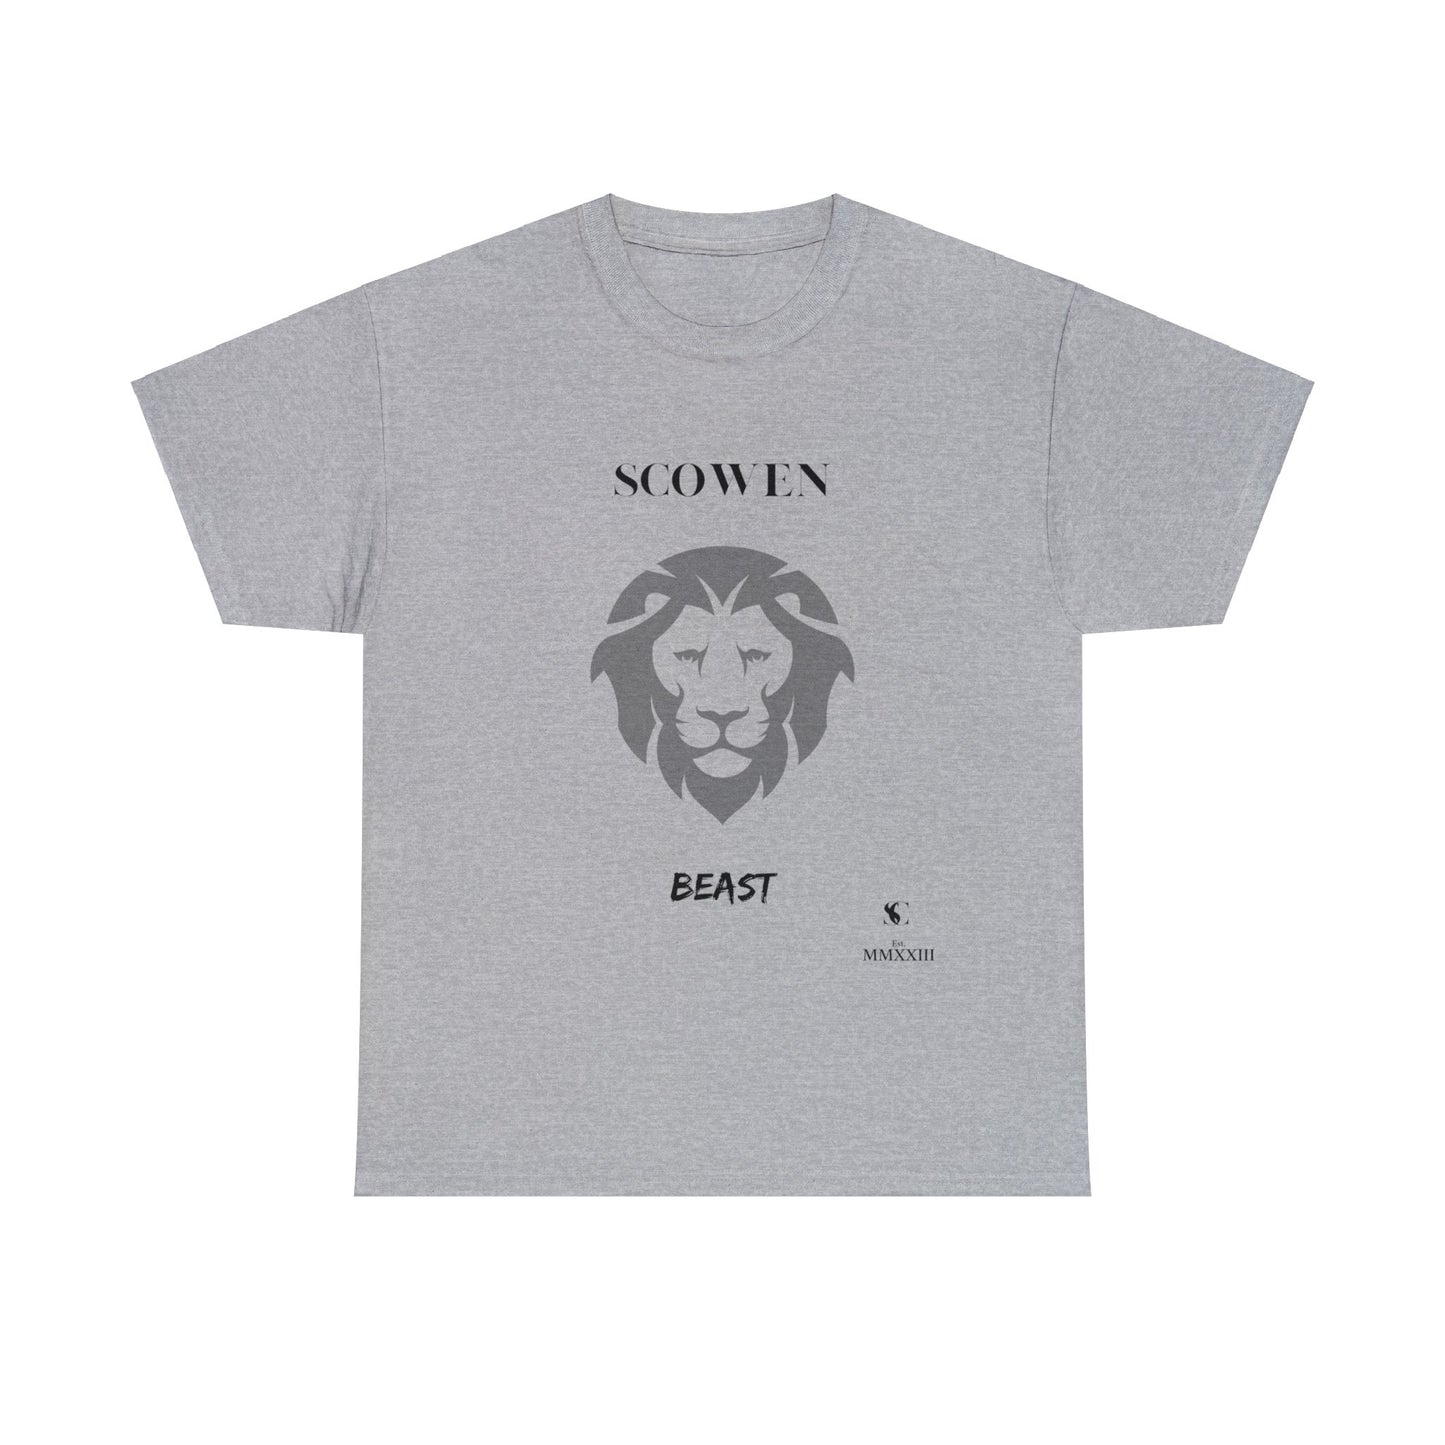 Scowen Beast T-shirt